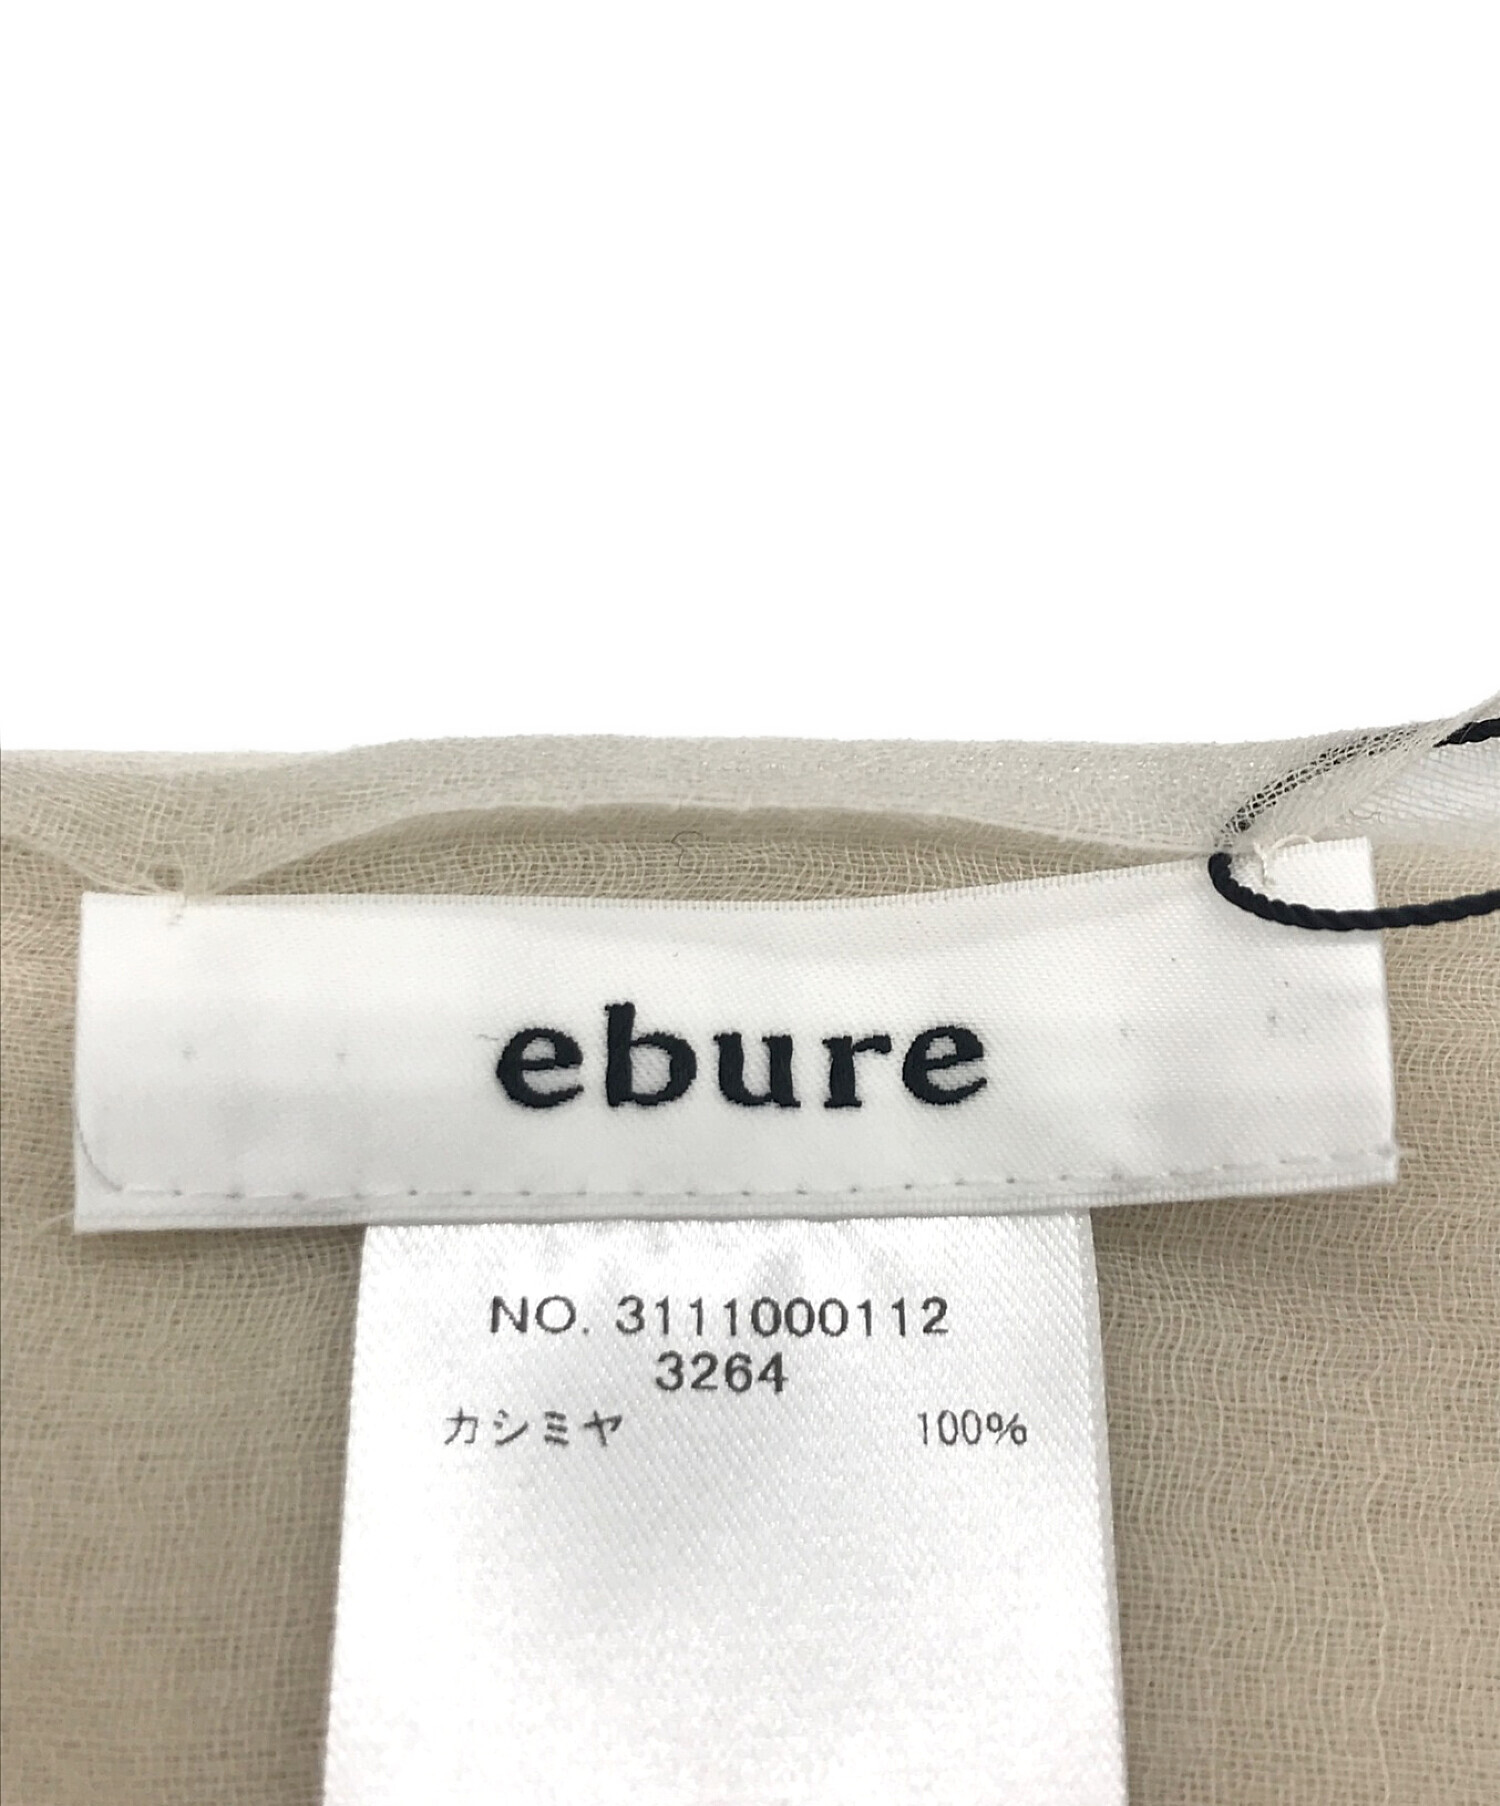 ebure (エブール) カシミヤストール アイボリー 未使用品